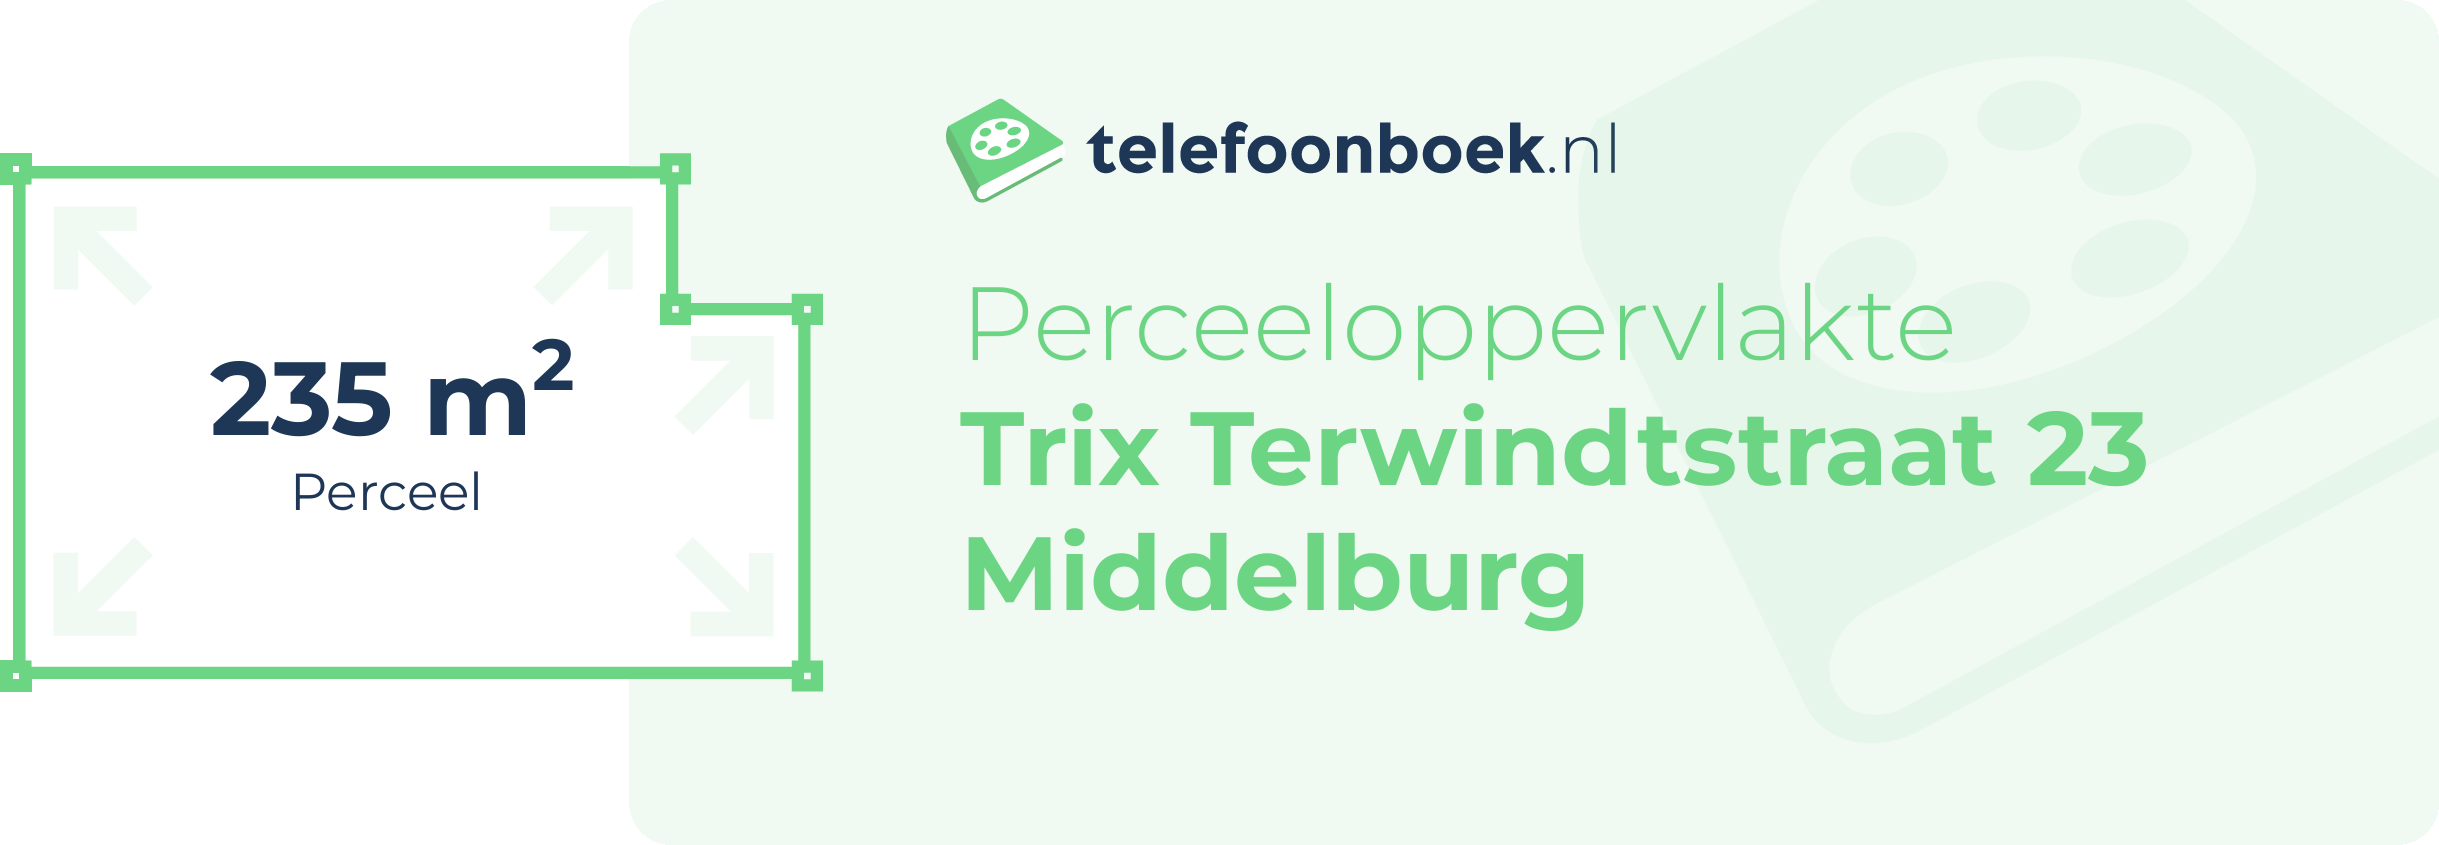 Perceeloppervlakte Trix Terwindtstraat 23 Middelburg